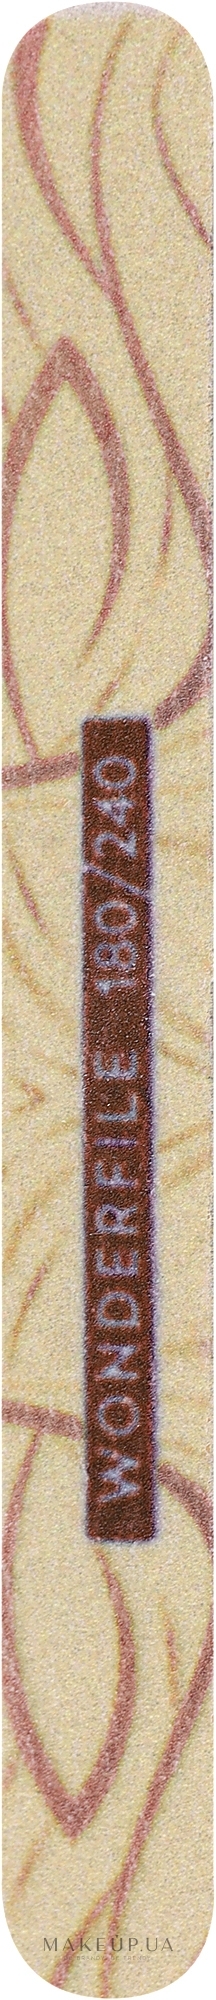 Пилочка для ногтей 13 х 1.5 см, с принтом на деревянной основе 180/240, 5 шт - Wonderfile — фото 5шт